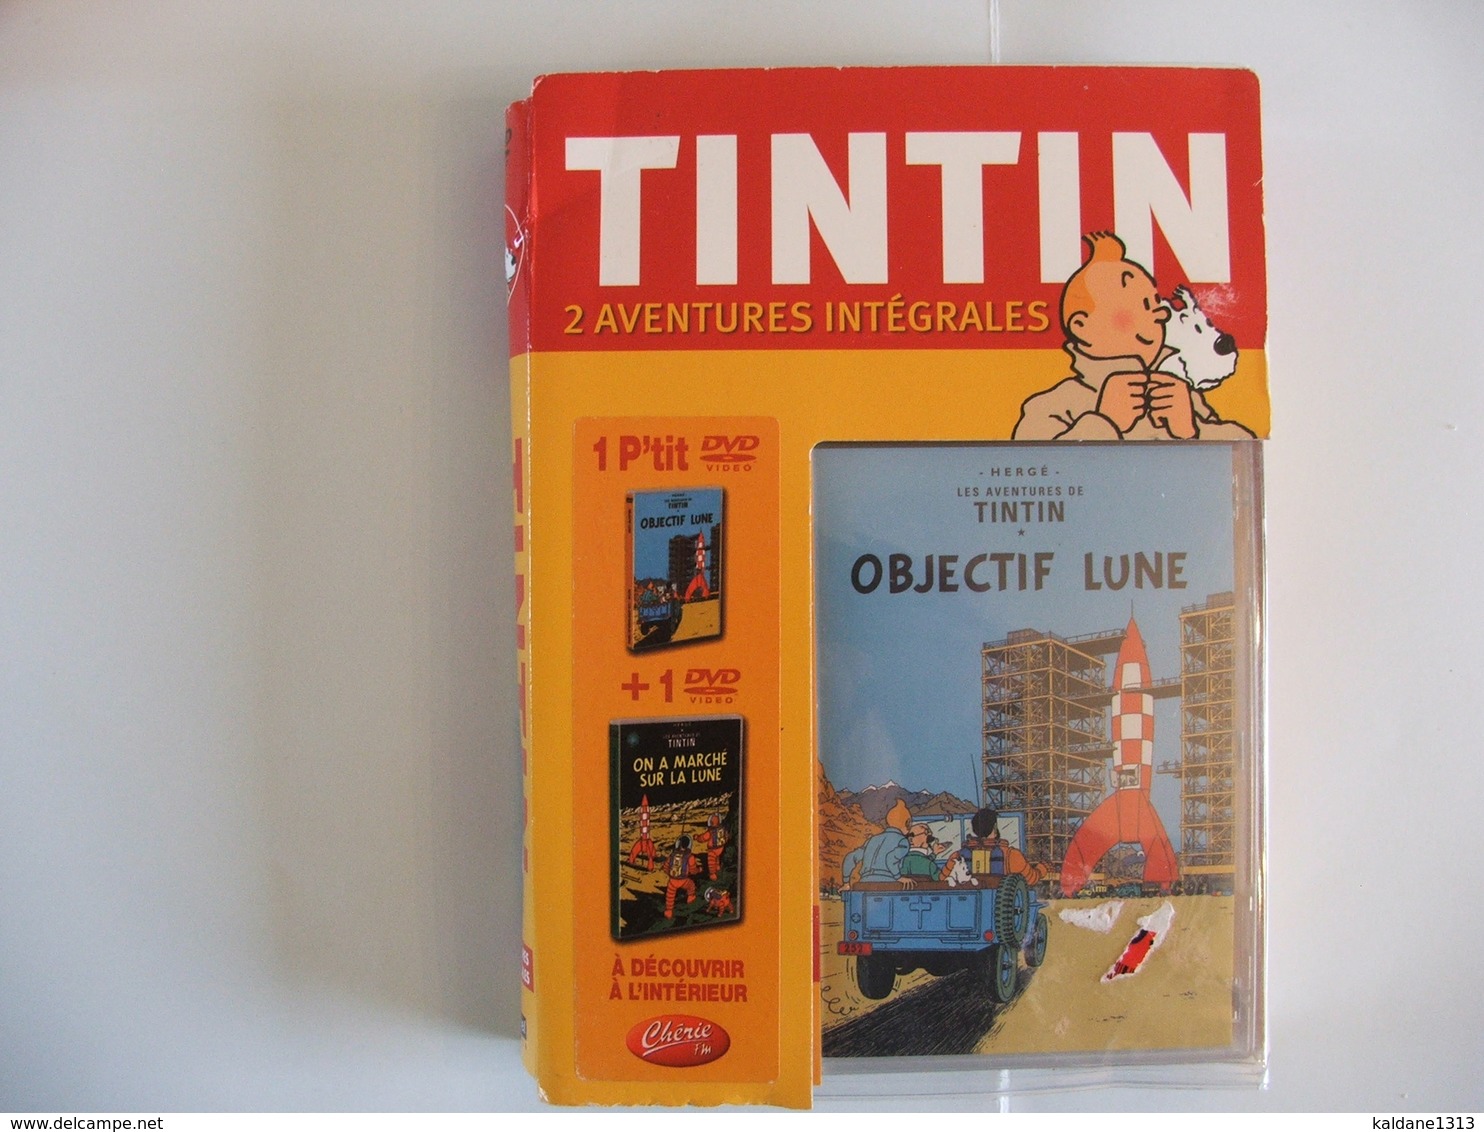 TINTIN Coffret 2 Aventures Intégrales 1 P'tit Dvd Objectif Lune + 1 Dvd On A Marché Sur La Lune Jamais Ouvert - Cartoons